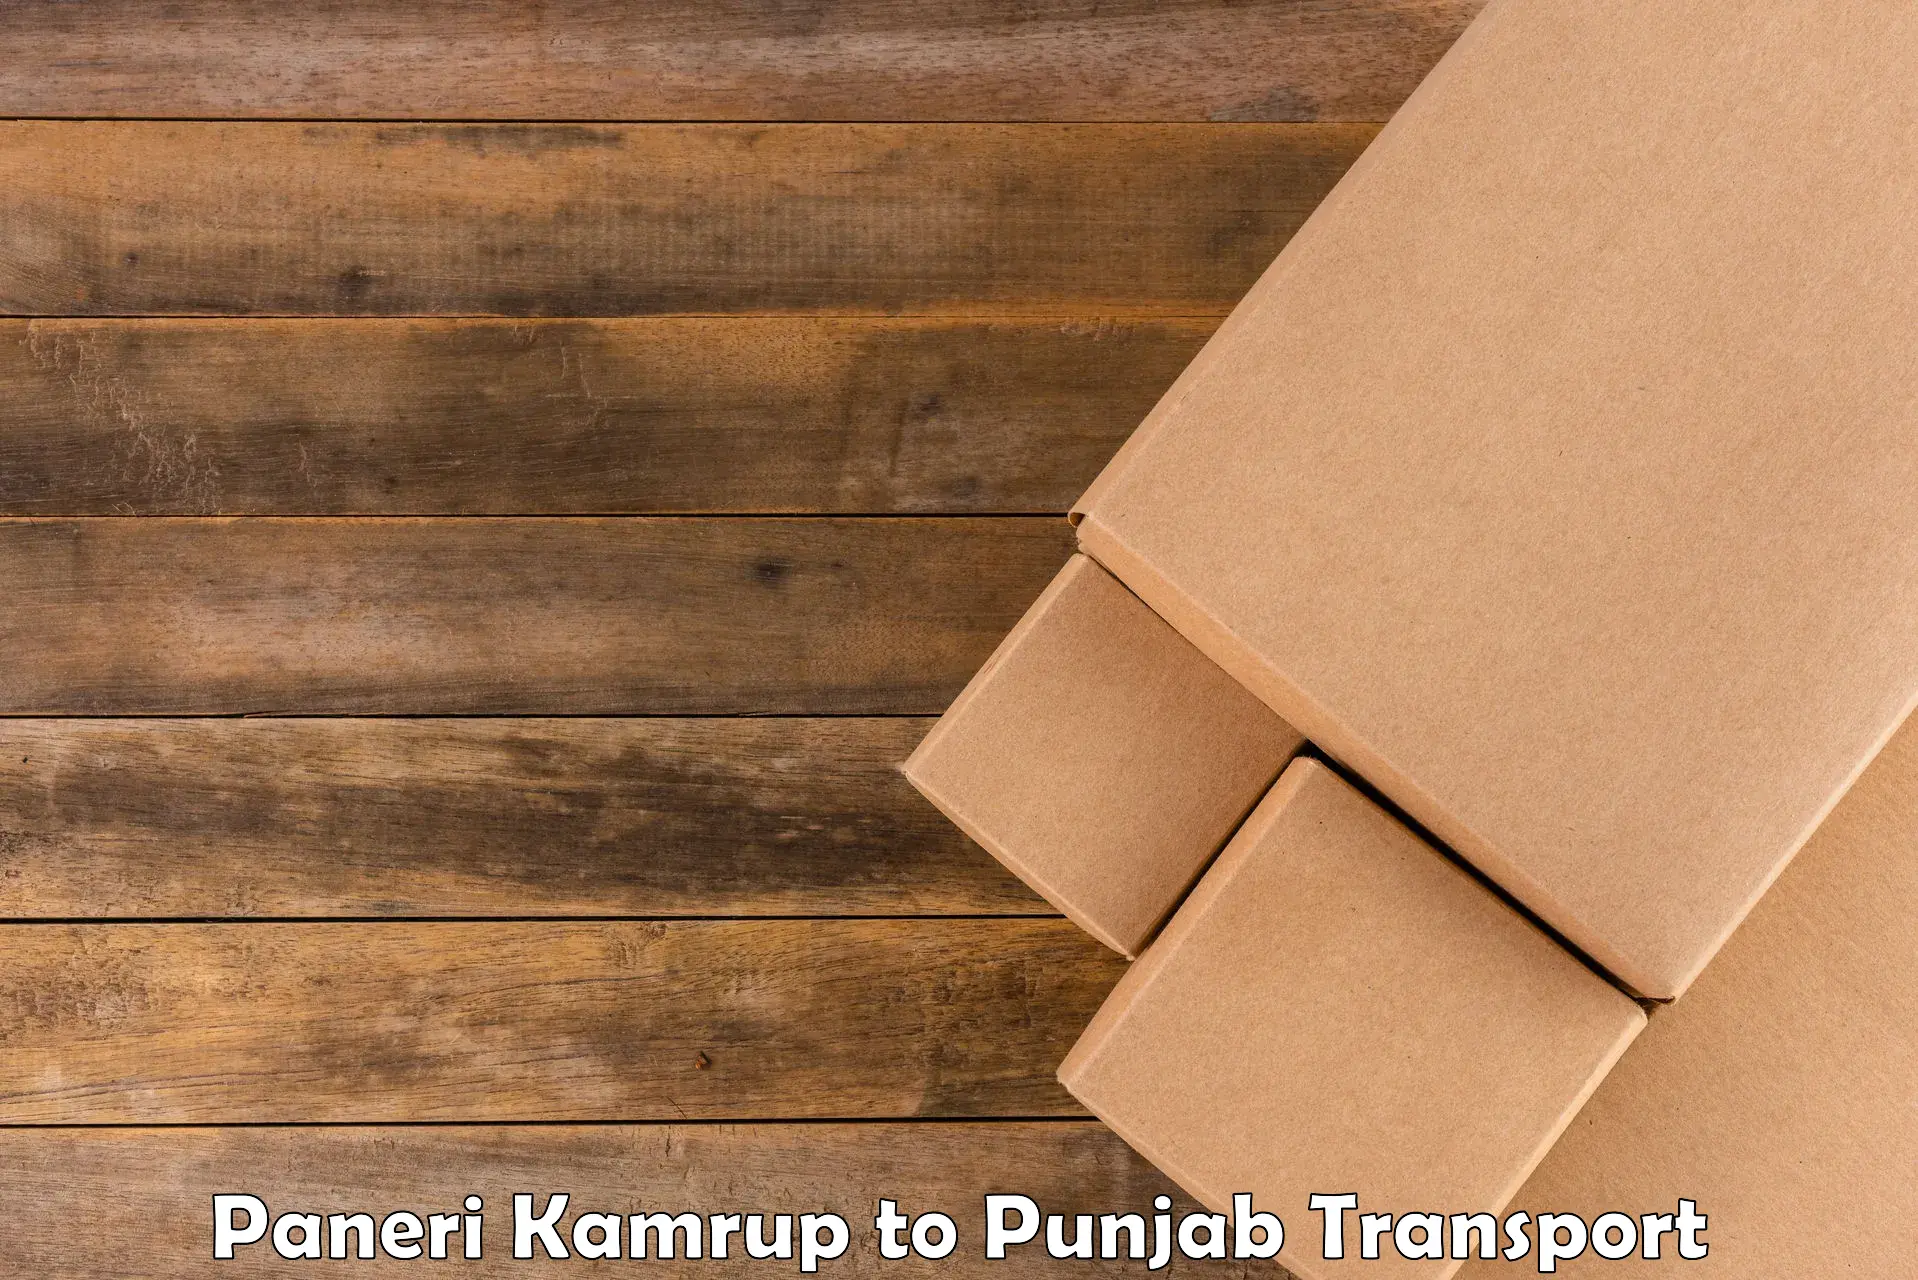 Nationwide transport services Paneri Kamrup to Punjab